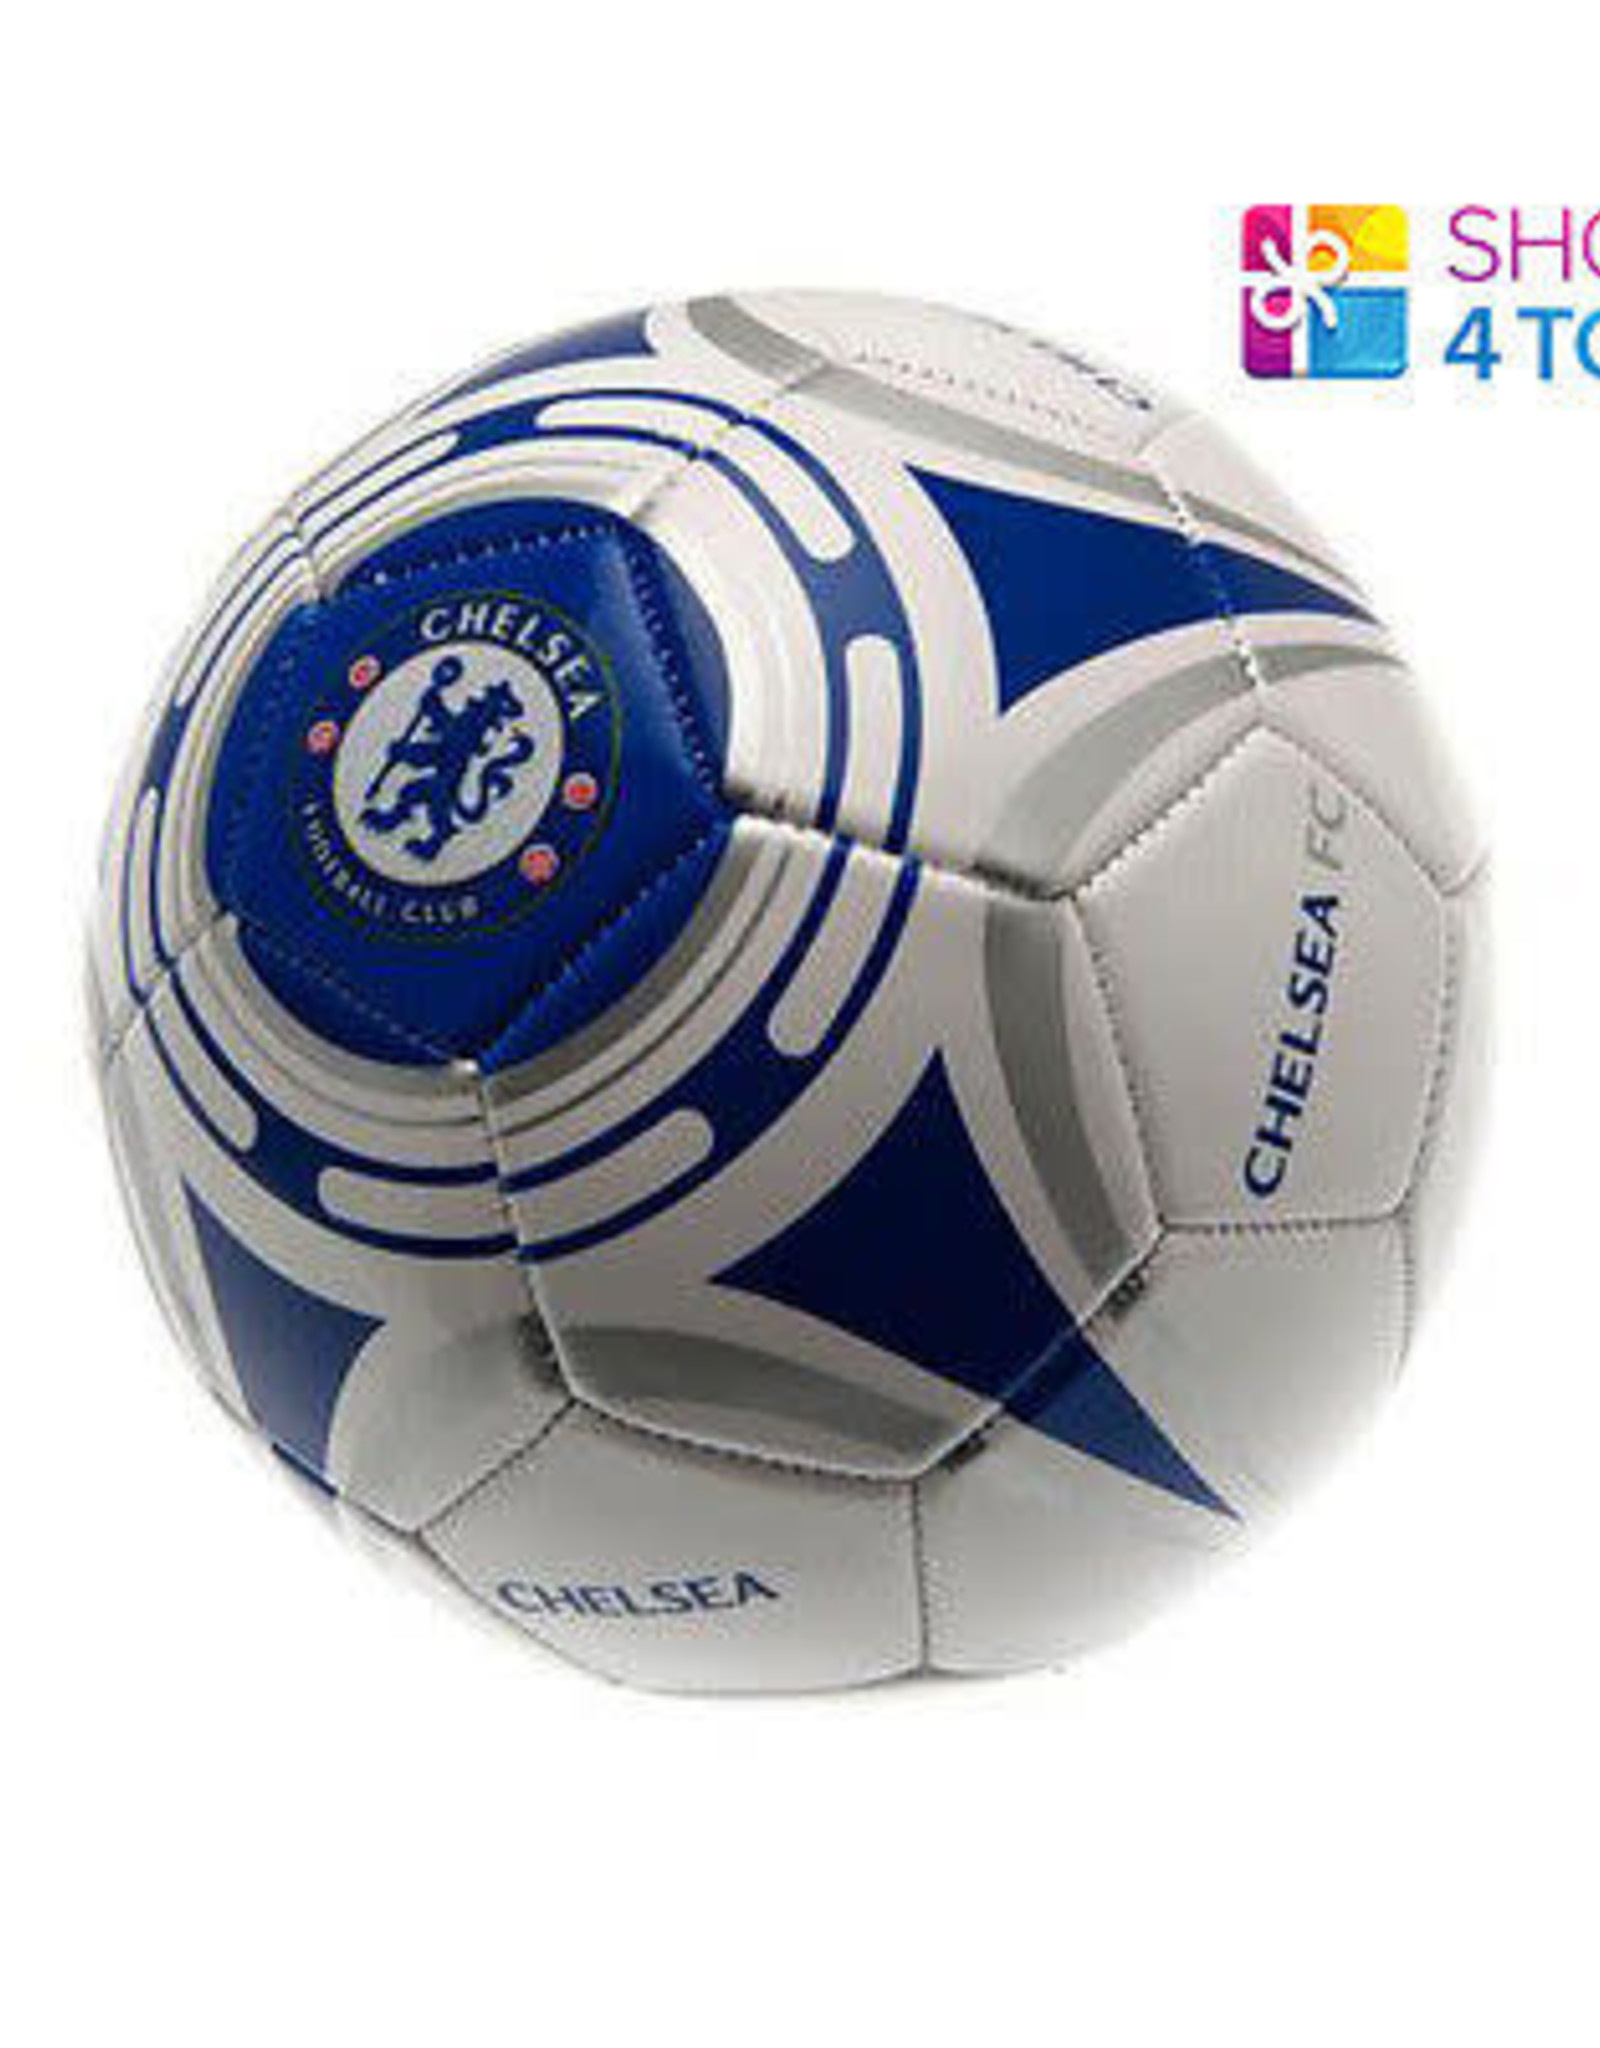 Chelsea Soccer Ball White/Blue Mini -1